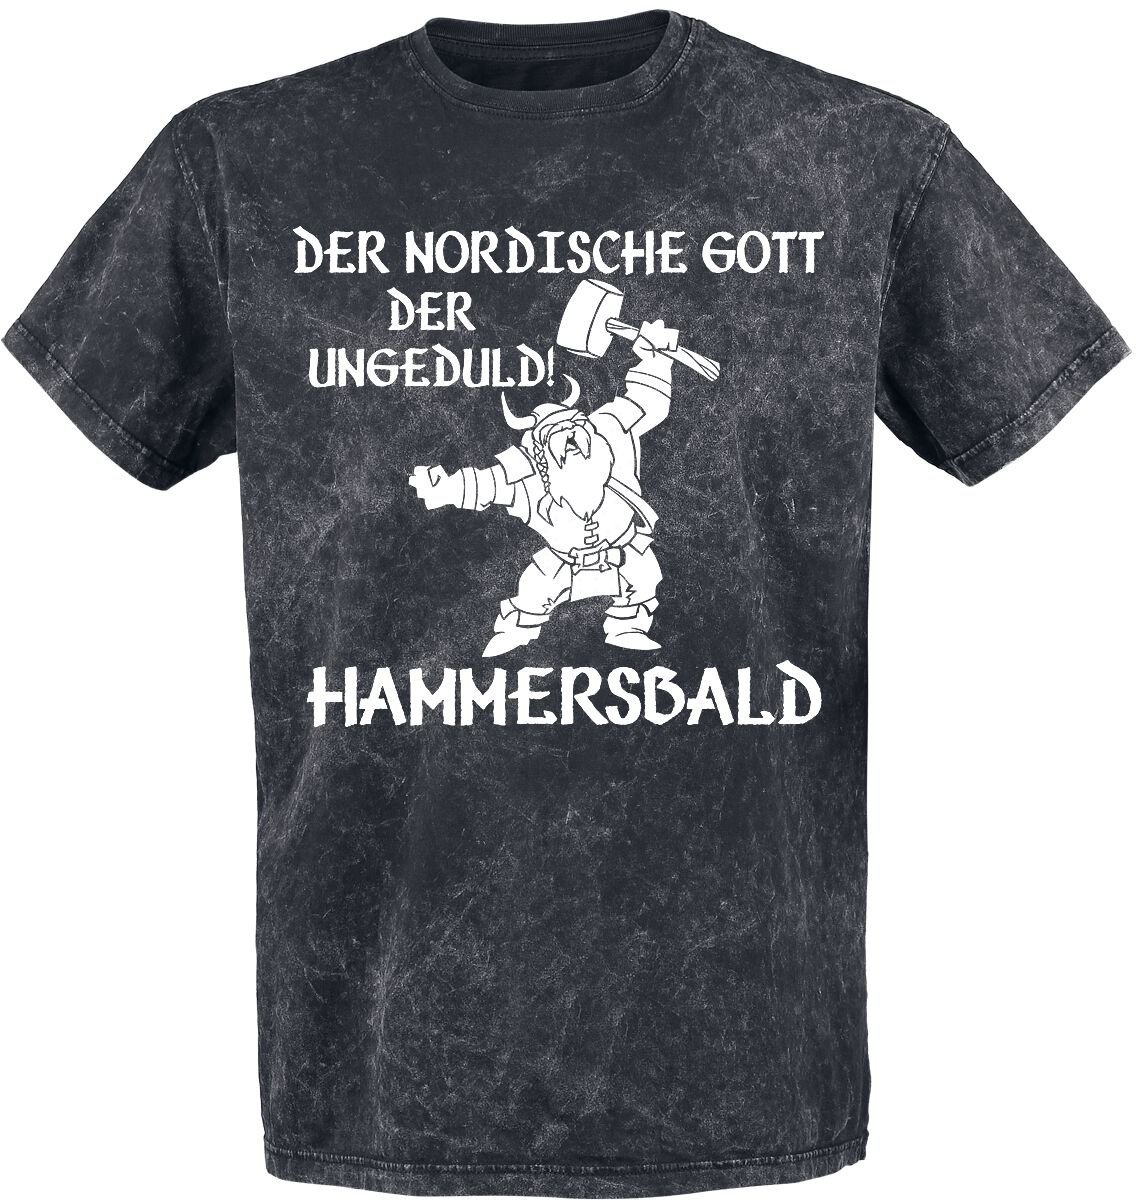 Funshirt T-Shirt - Der nordische Gott der Ungeduld! Hammersbald - M bis 4XL - für Männer - Größe M - dunkelgrau